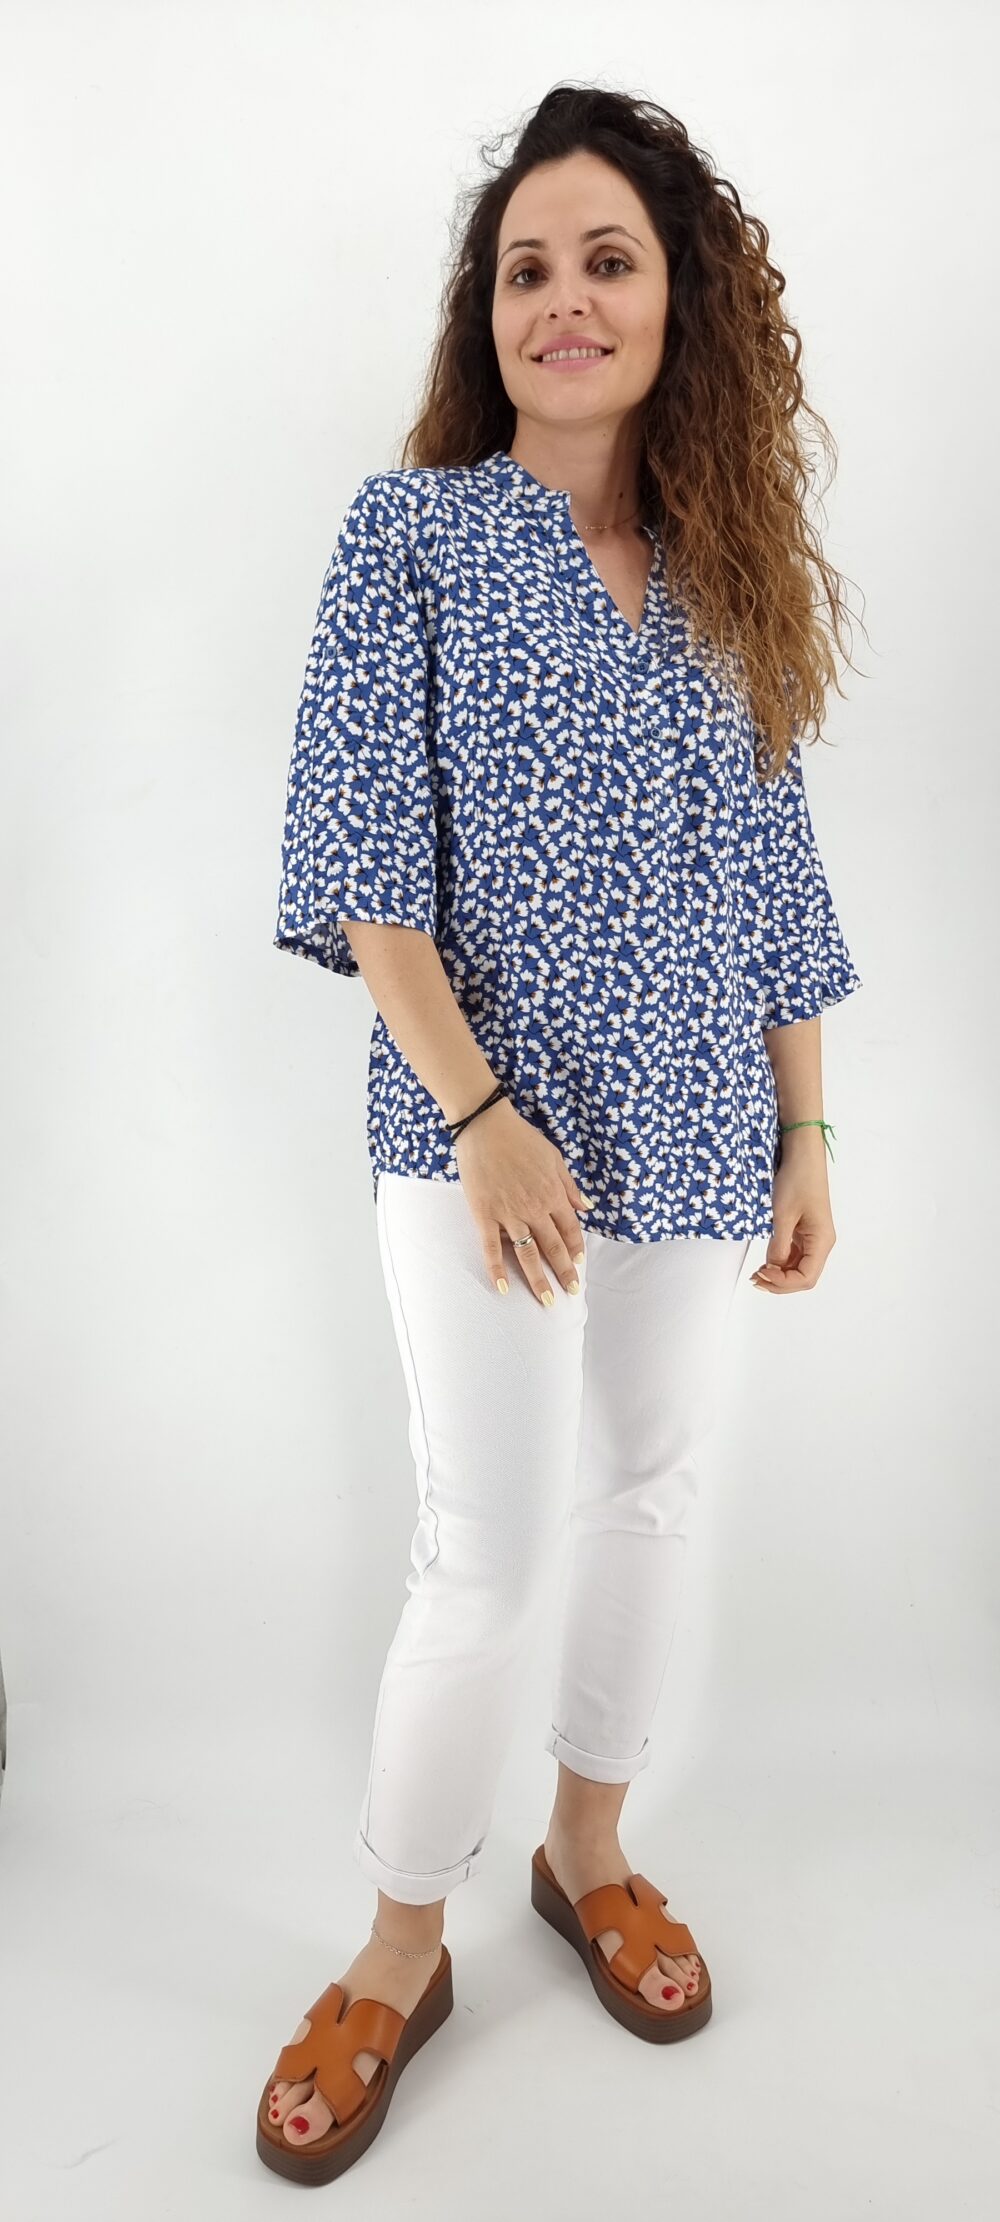 Μπλούζα με φλοράλ μοτίβο και 3 κουμπιά στο μπούστο μπλε